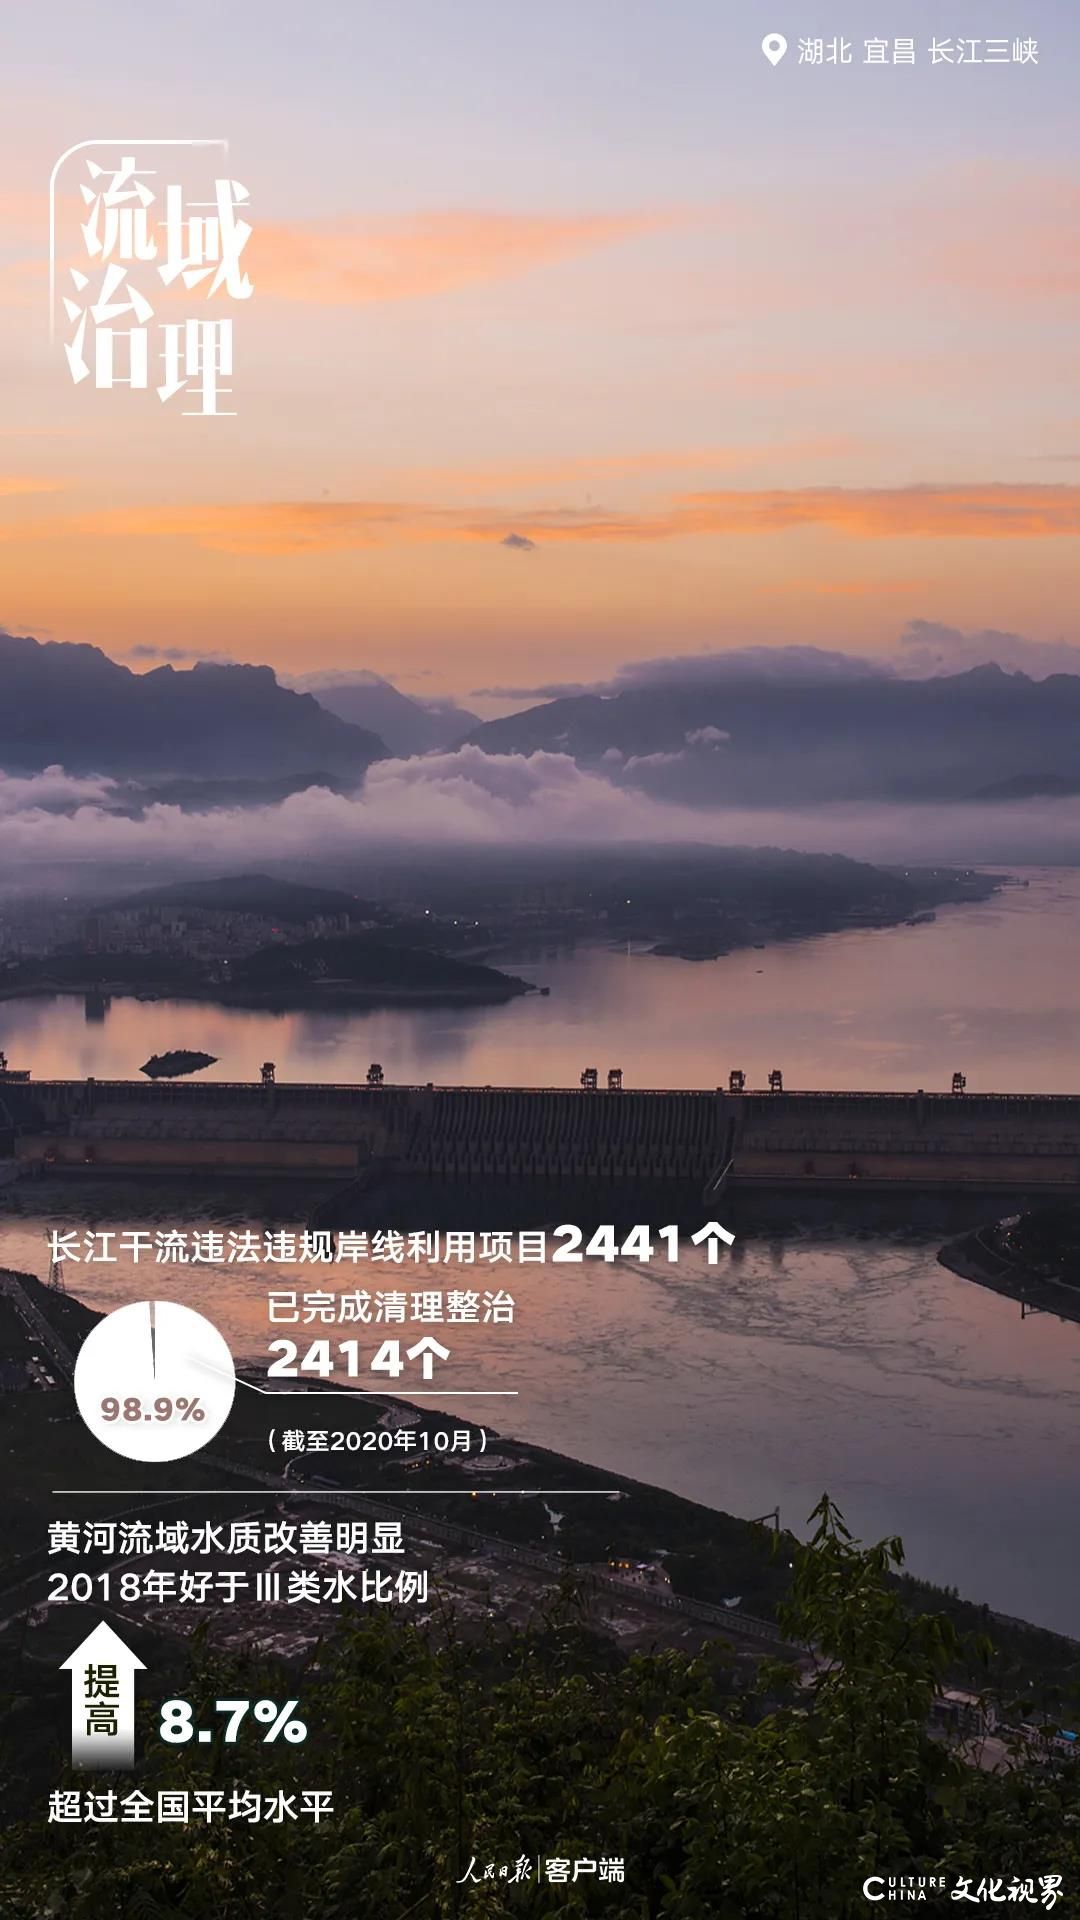 北京重污染天数由43天降到4天，全国森林覆盖率提升到22.96%……“十三五”的成绩让中国更美丽